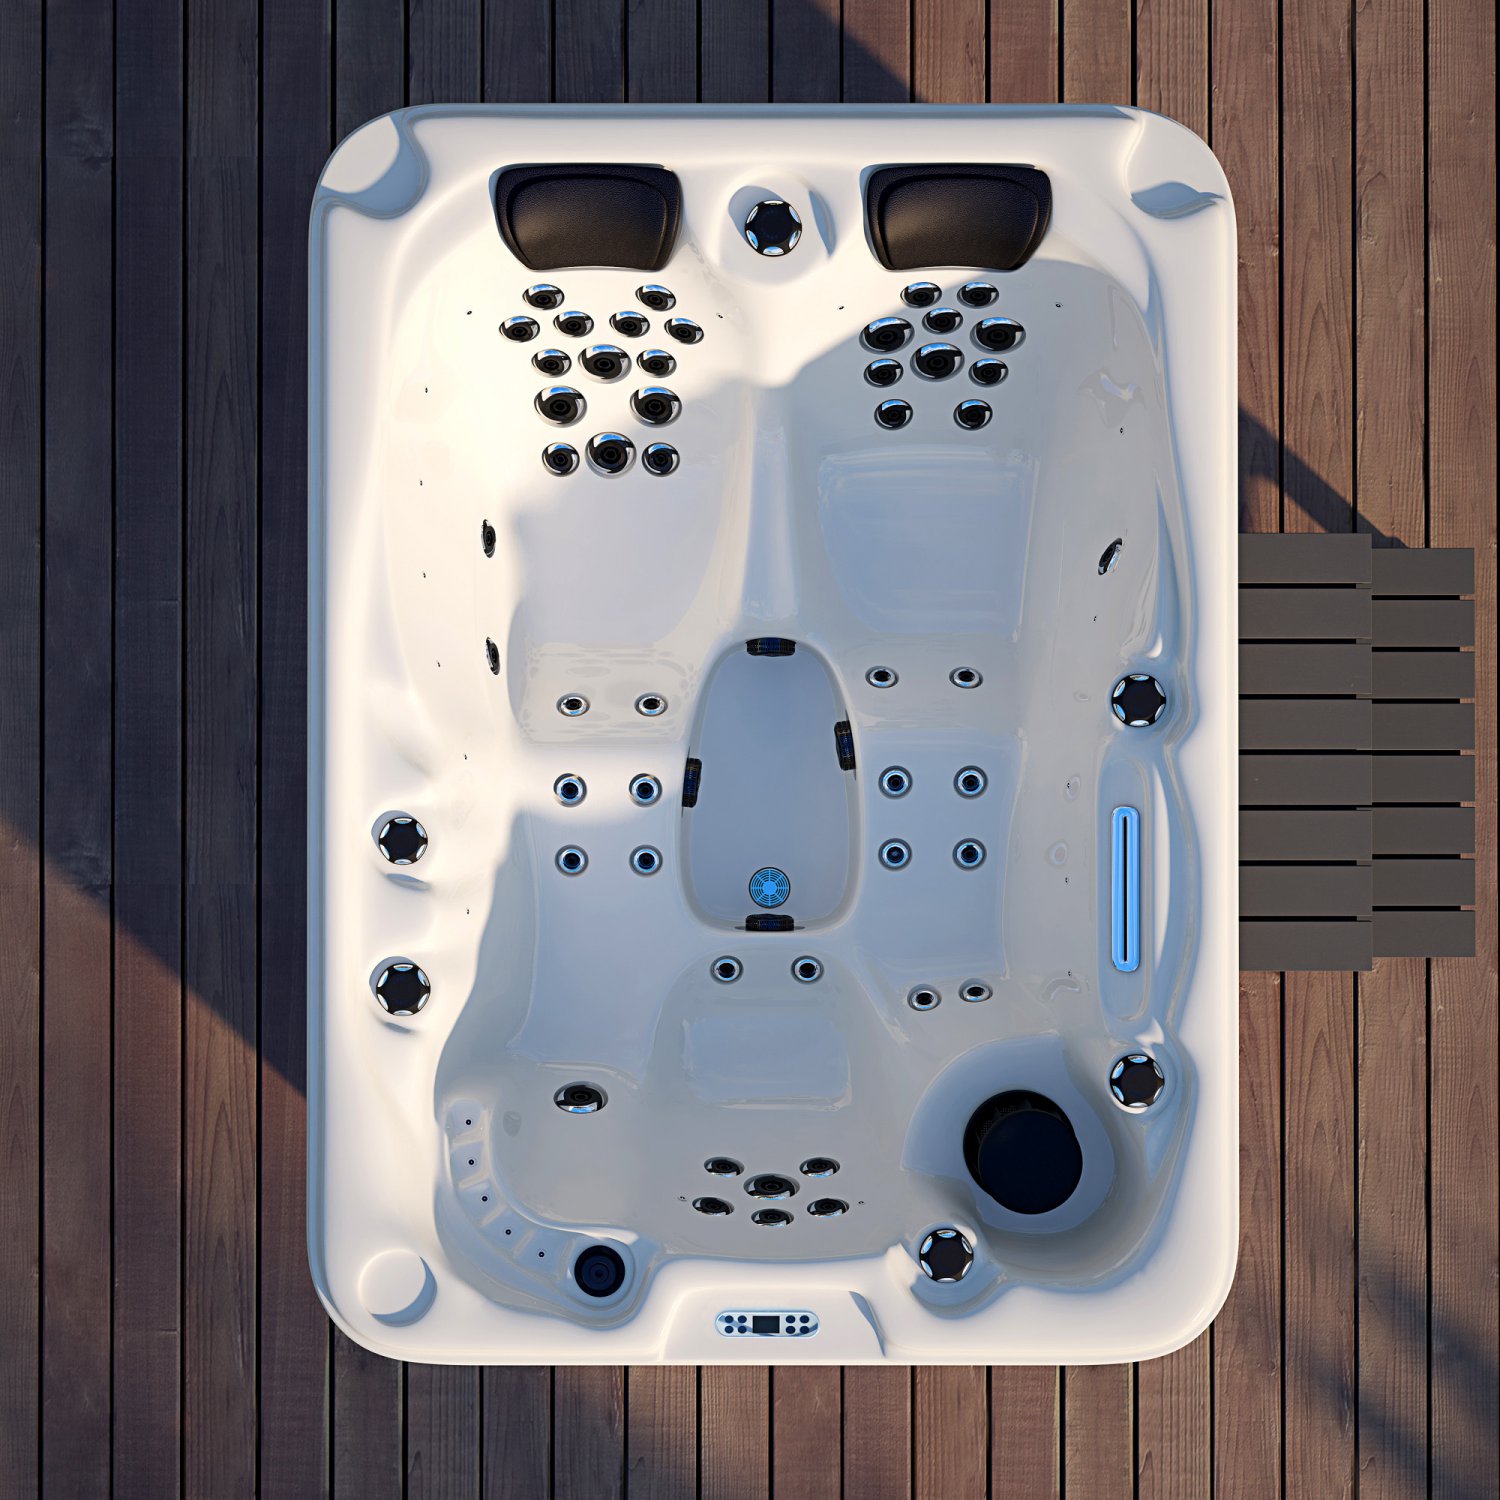 3 Person Outdoor Hydrotherapy Bathtub Hot Bath Tub Whirlpool Spa